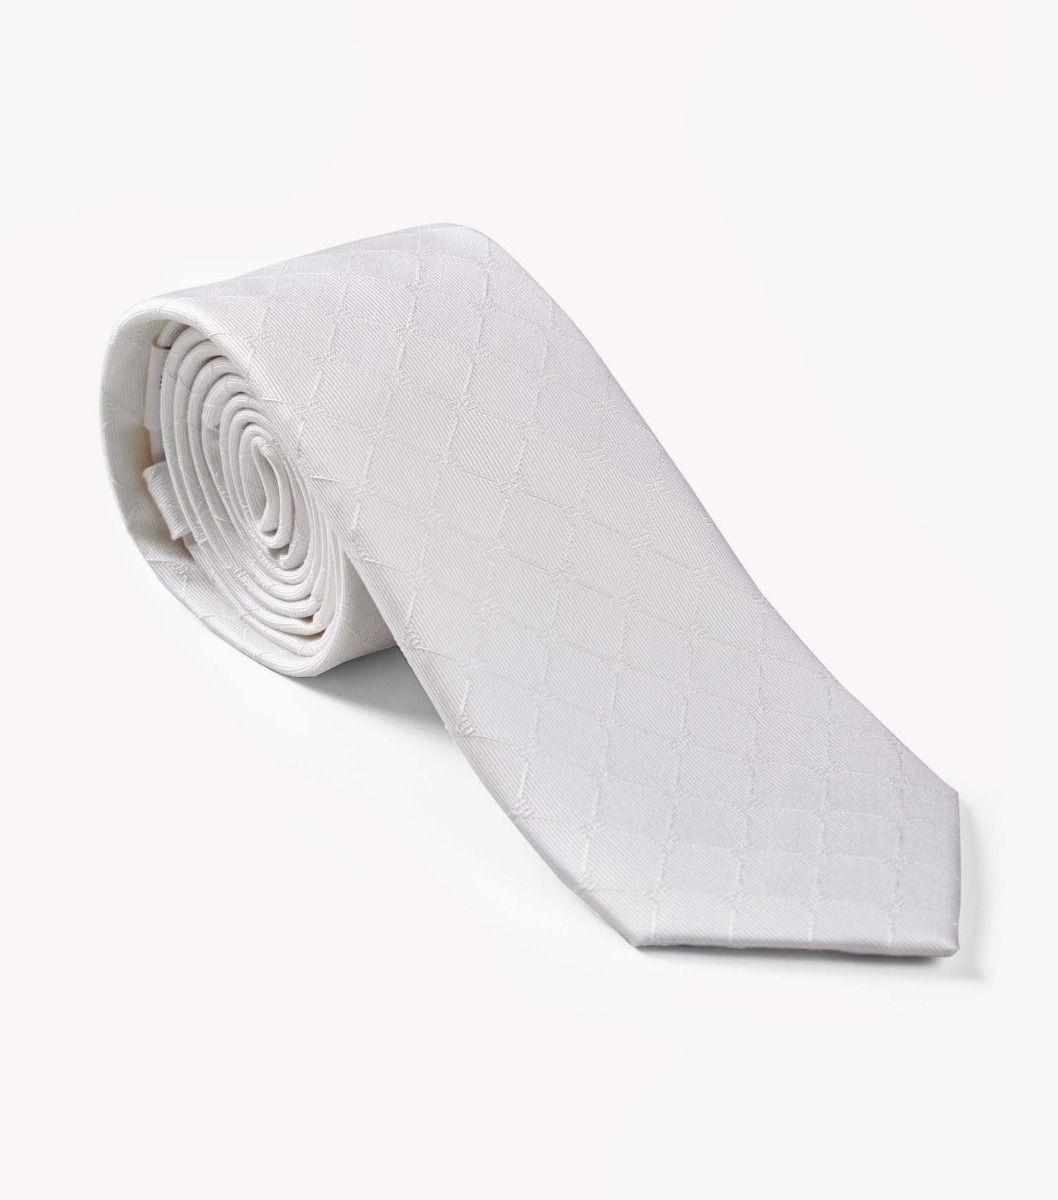 Men's 100% Silk Hand Made Tie - White